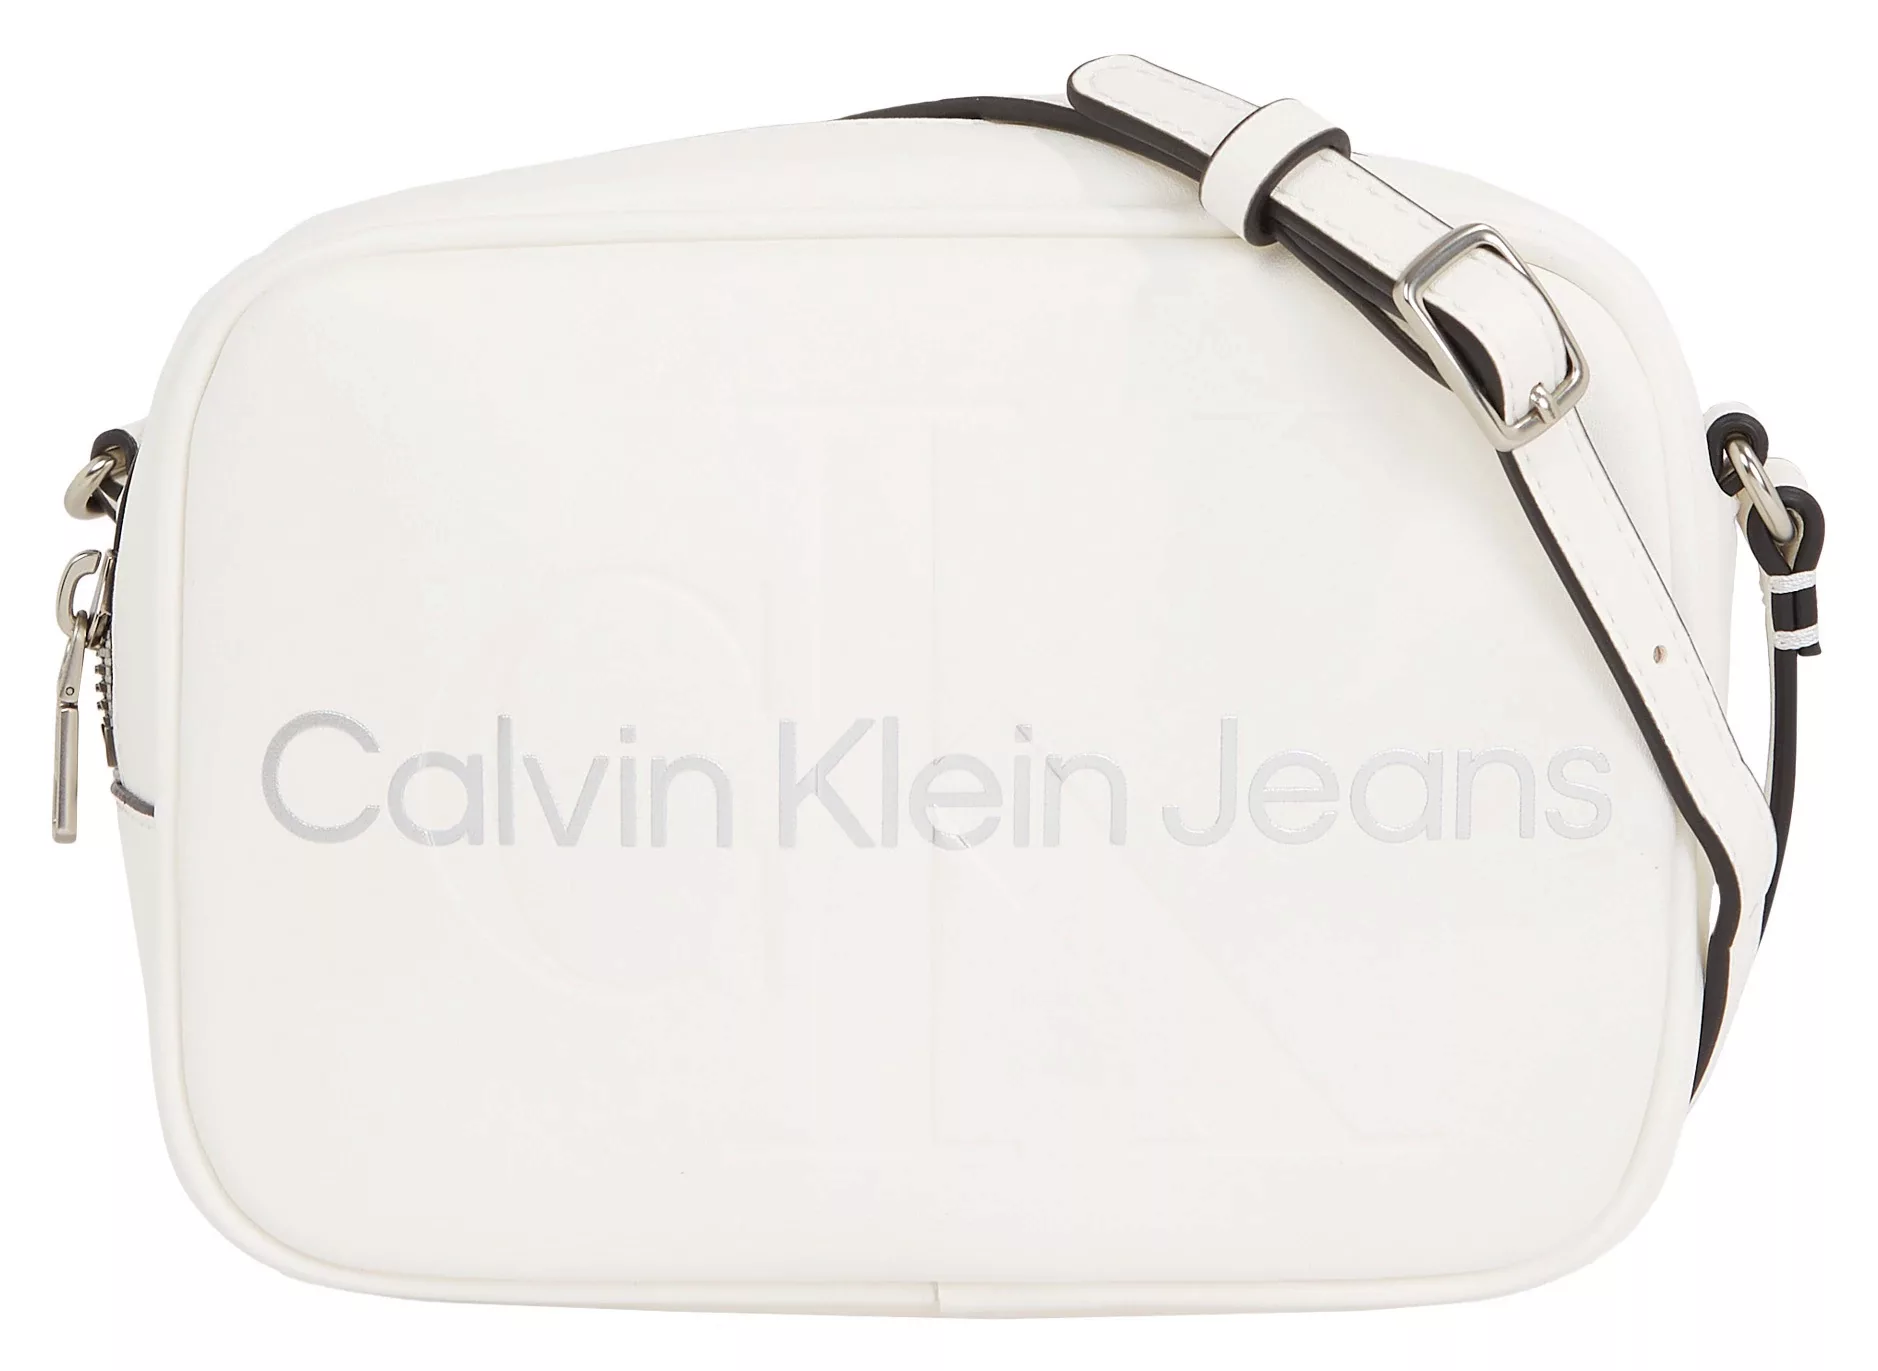 Calvin Klein Jeans Mini Bag "SCULPTED CAMERA BAG18 MONO", mit großflächigem günstig online kaufen